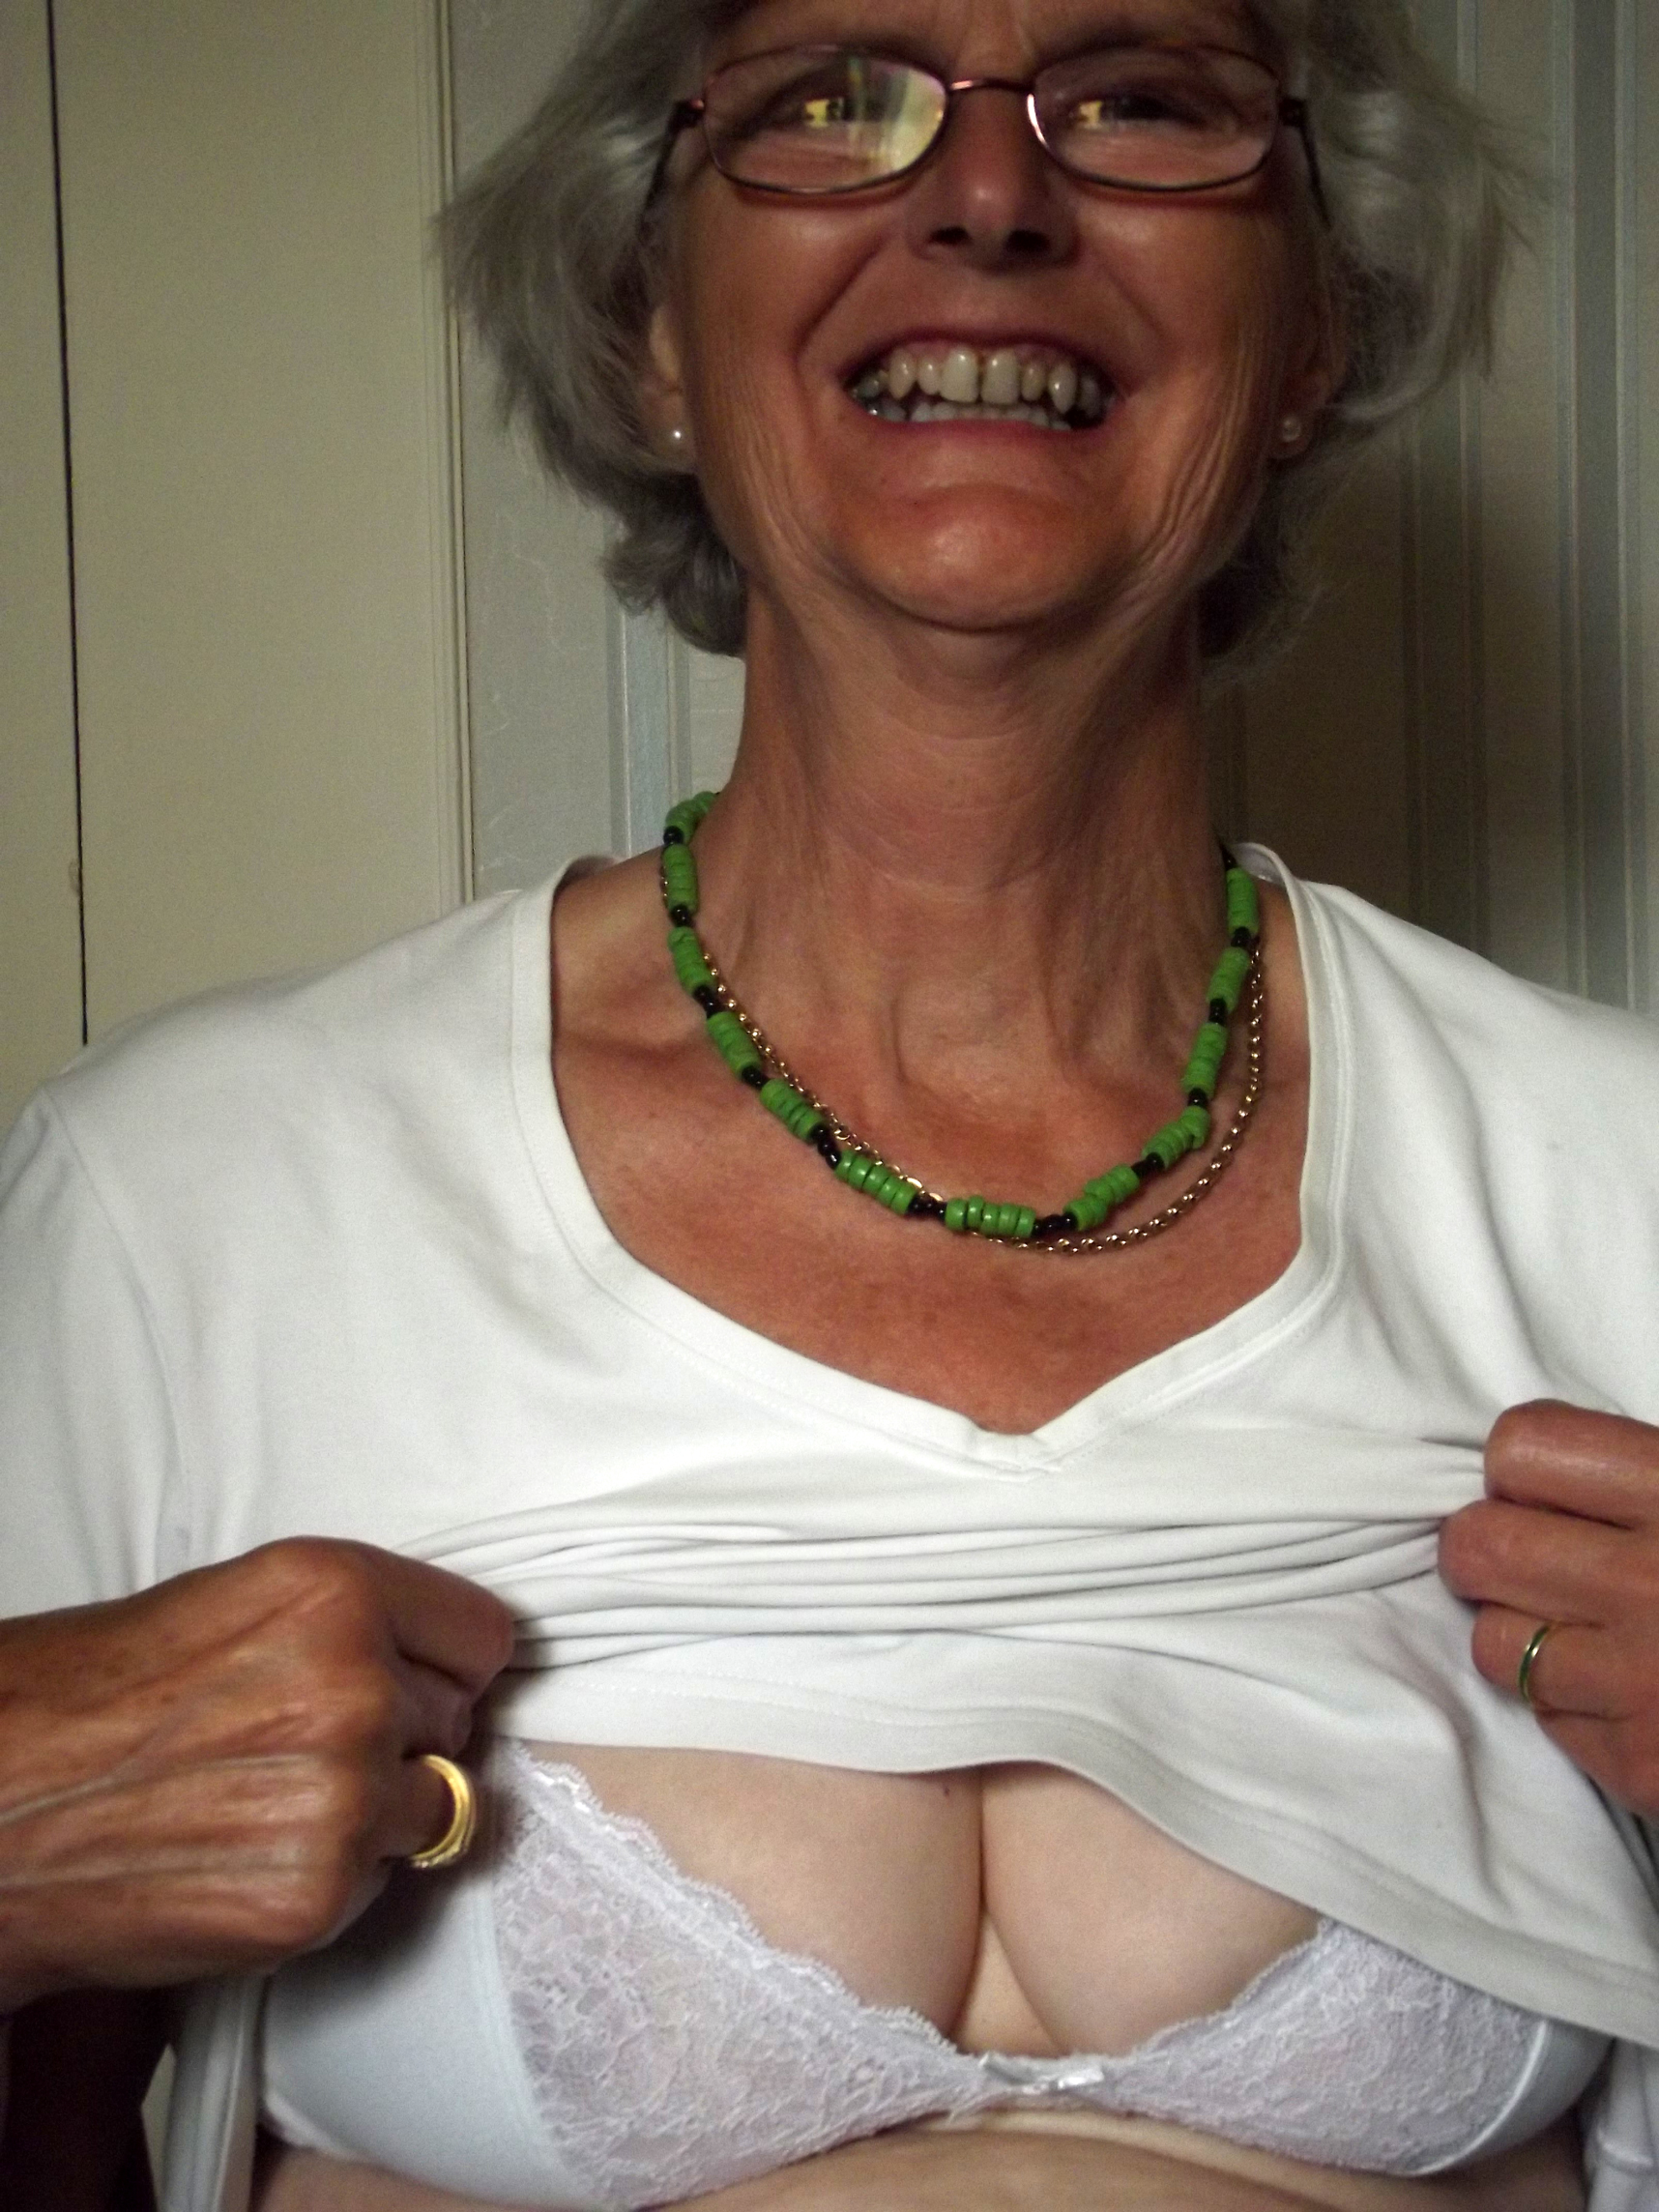 amateur granny posing nude porn scene picture